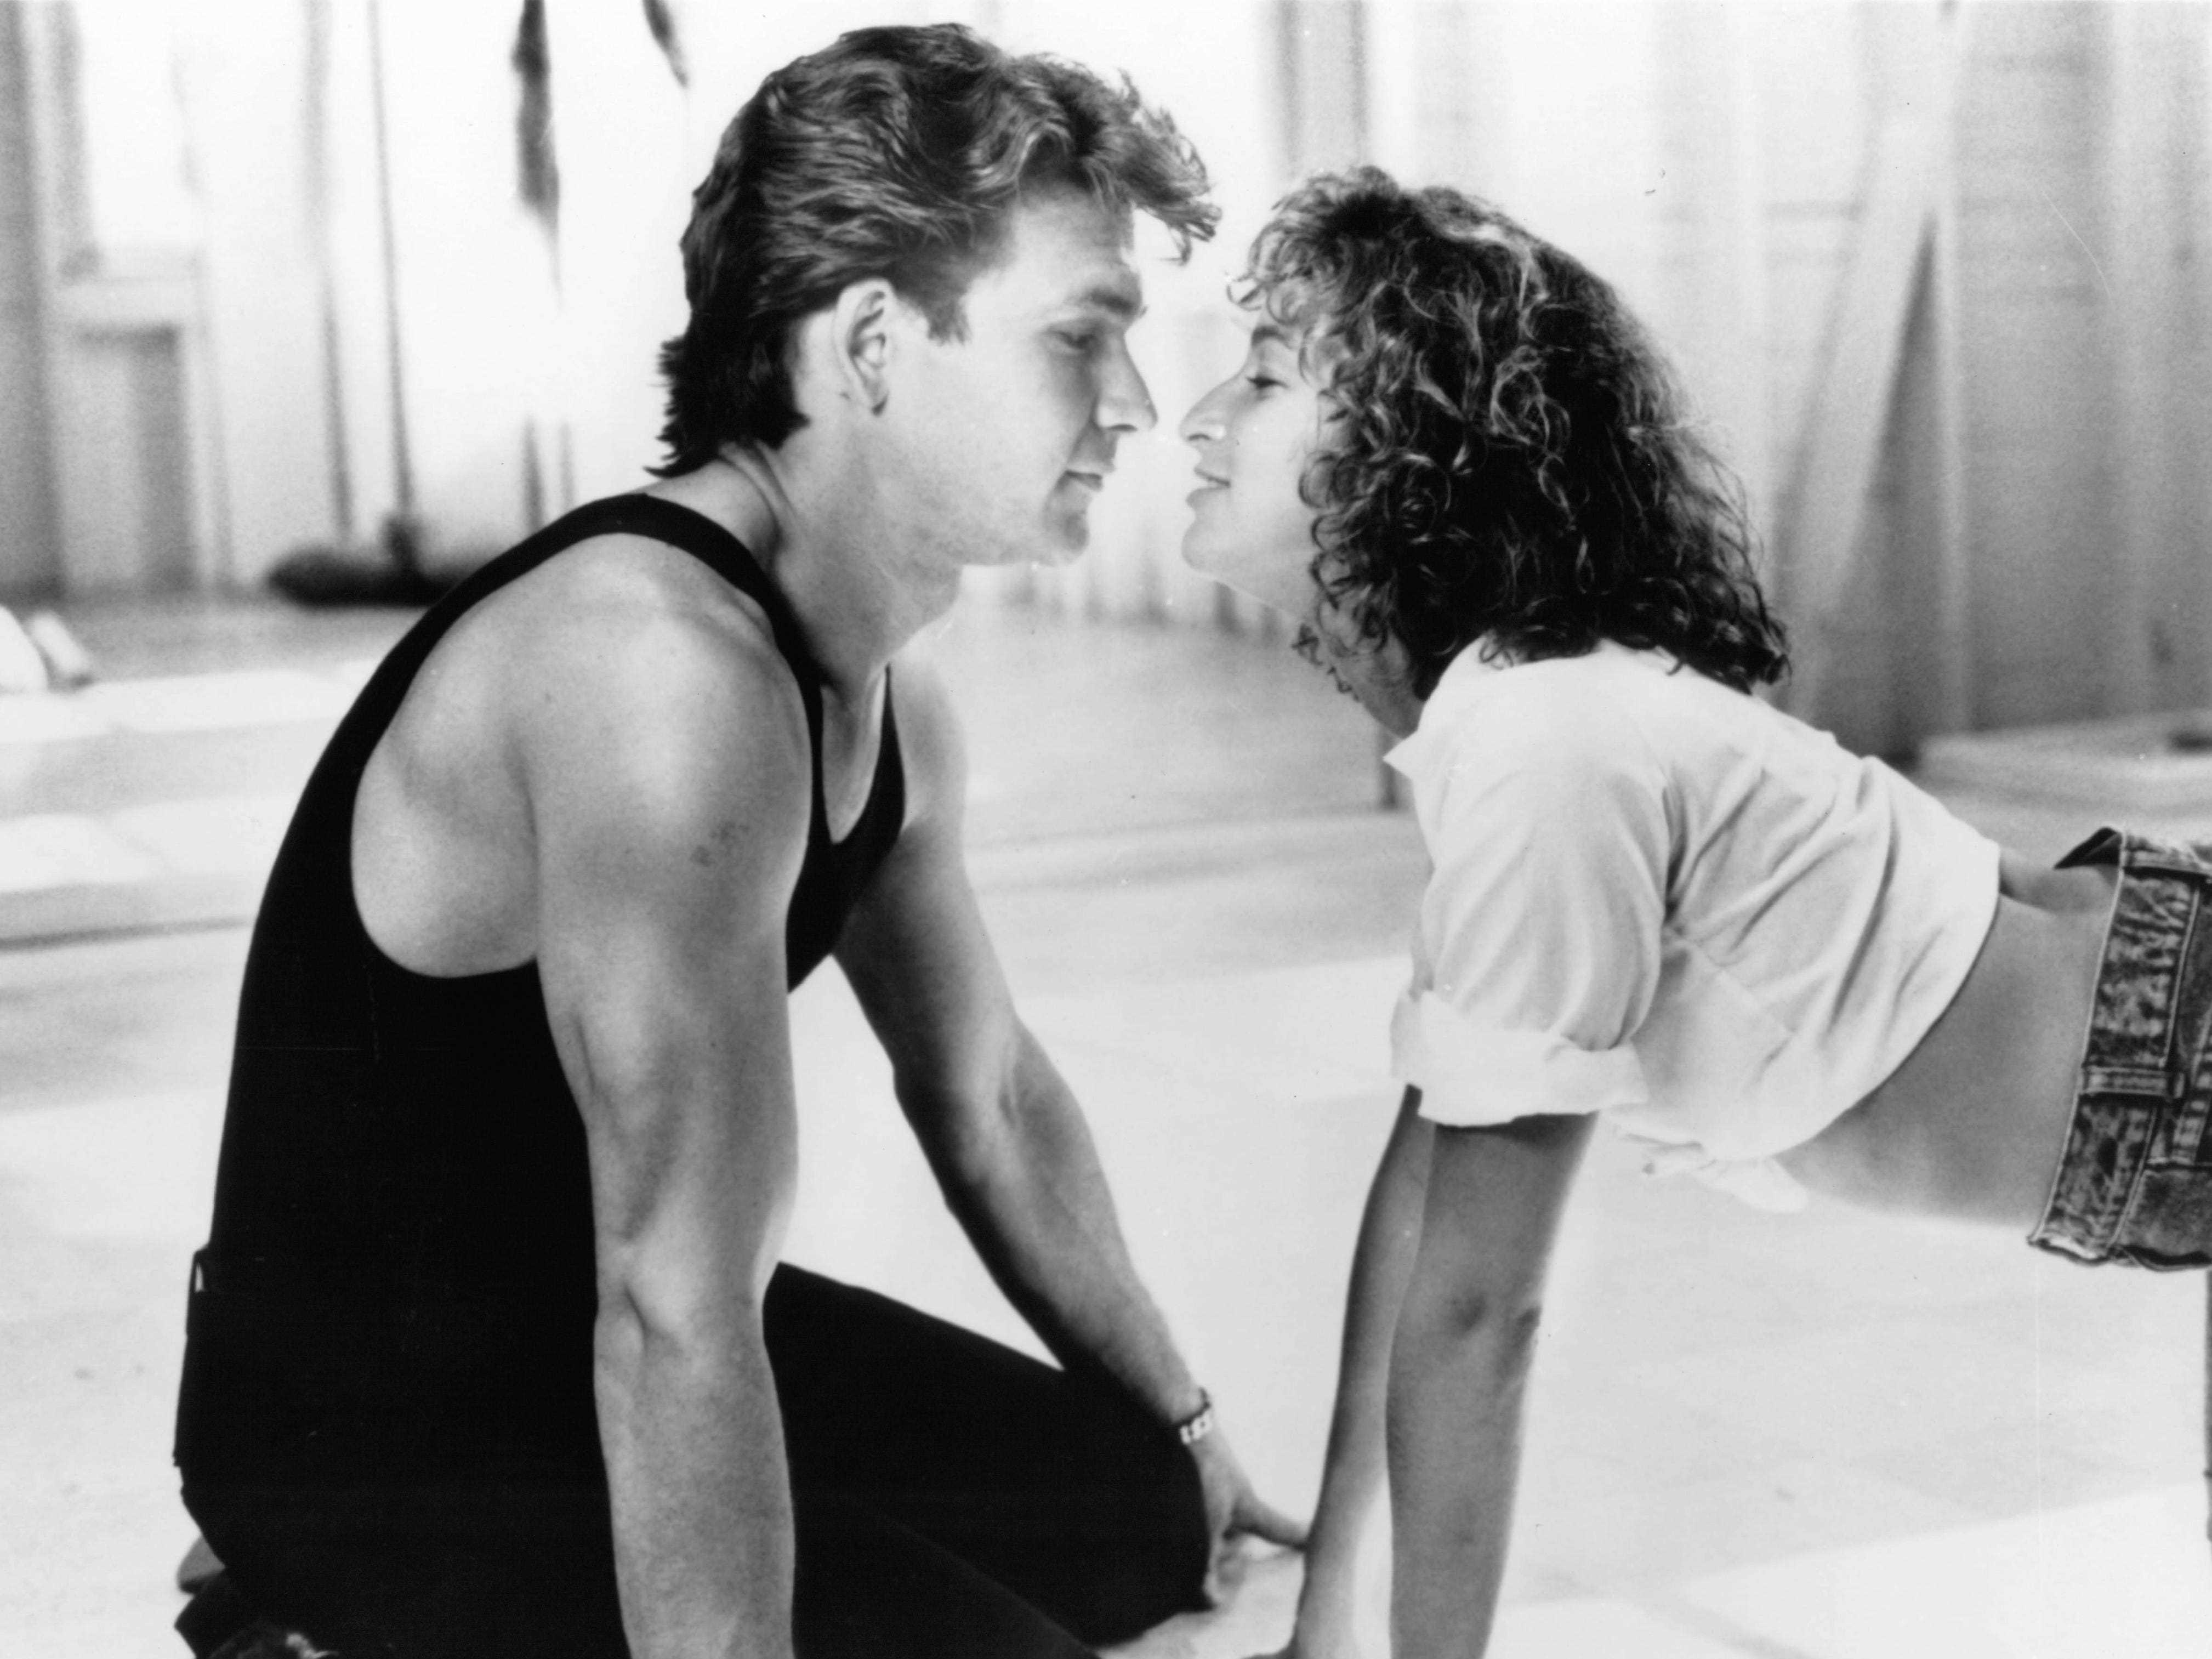 Patrick Swayze und Jennifer Grey in einer Szene aus dem Film „Dirty Dancing“, 1987.